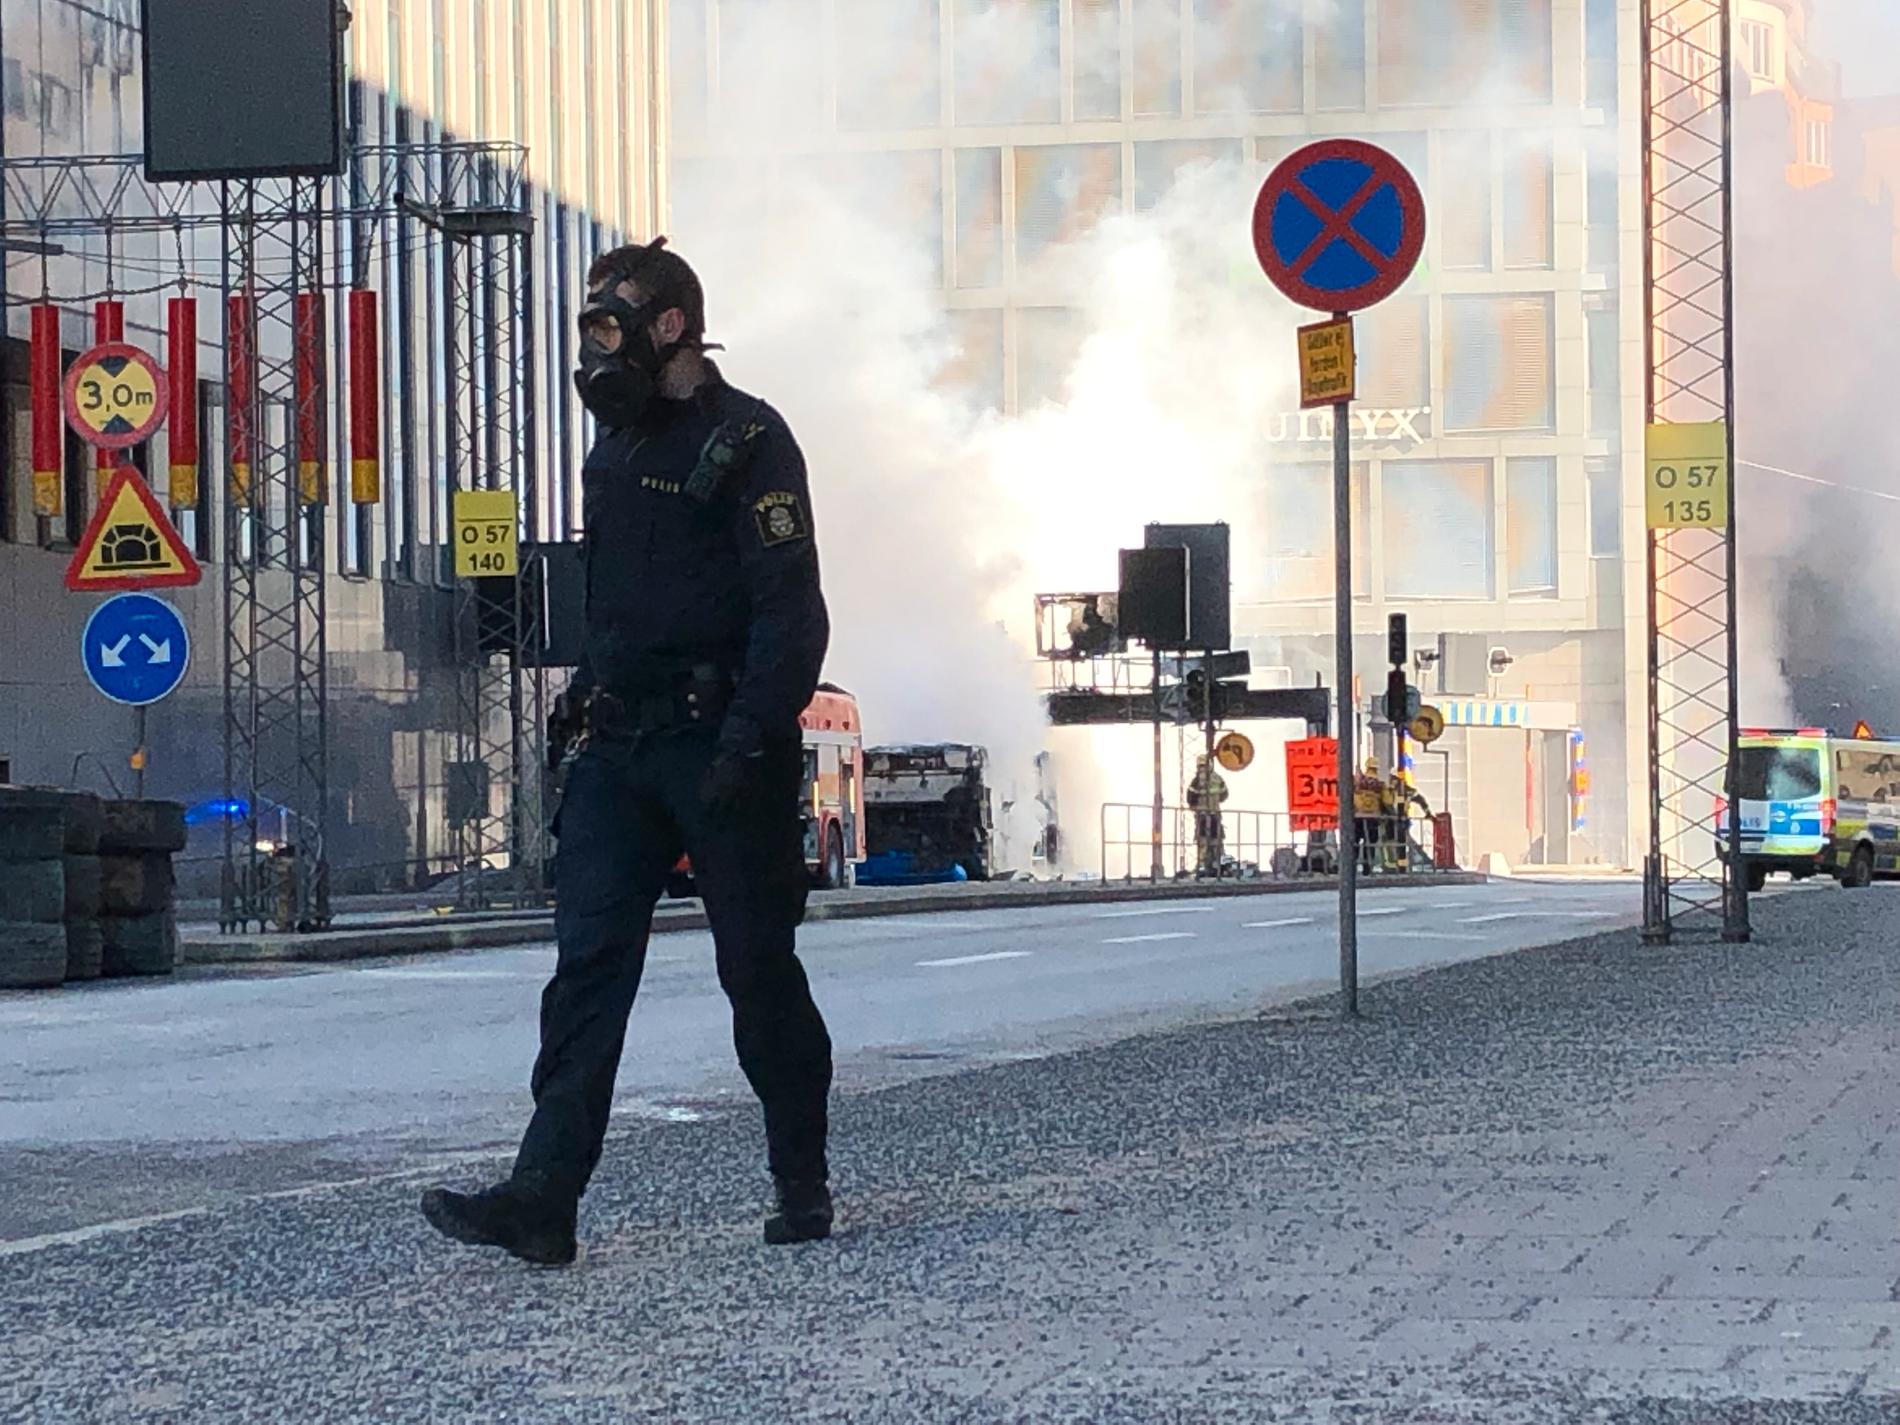 Bussen exploderade och började brinna på Tegelbacken i Stockholm i söndags.